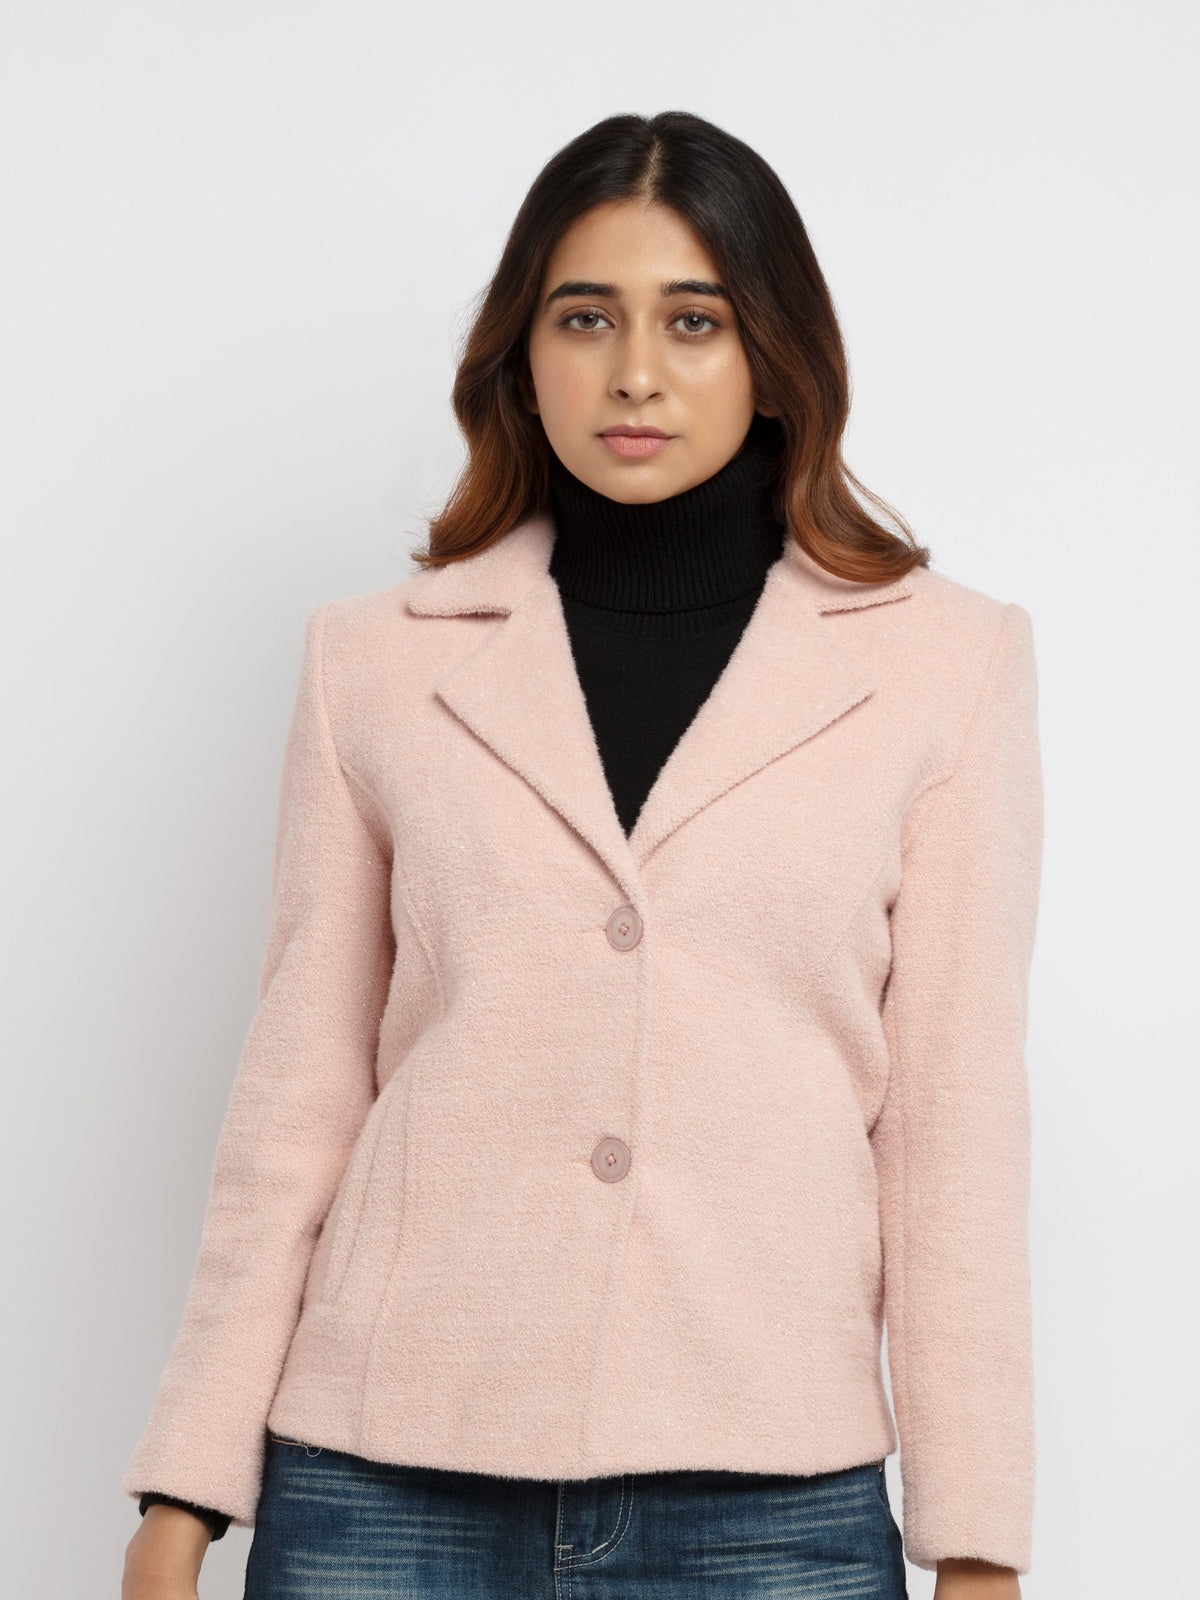 fur jacket for women